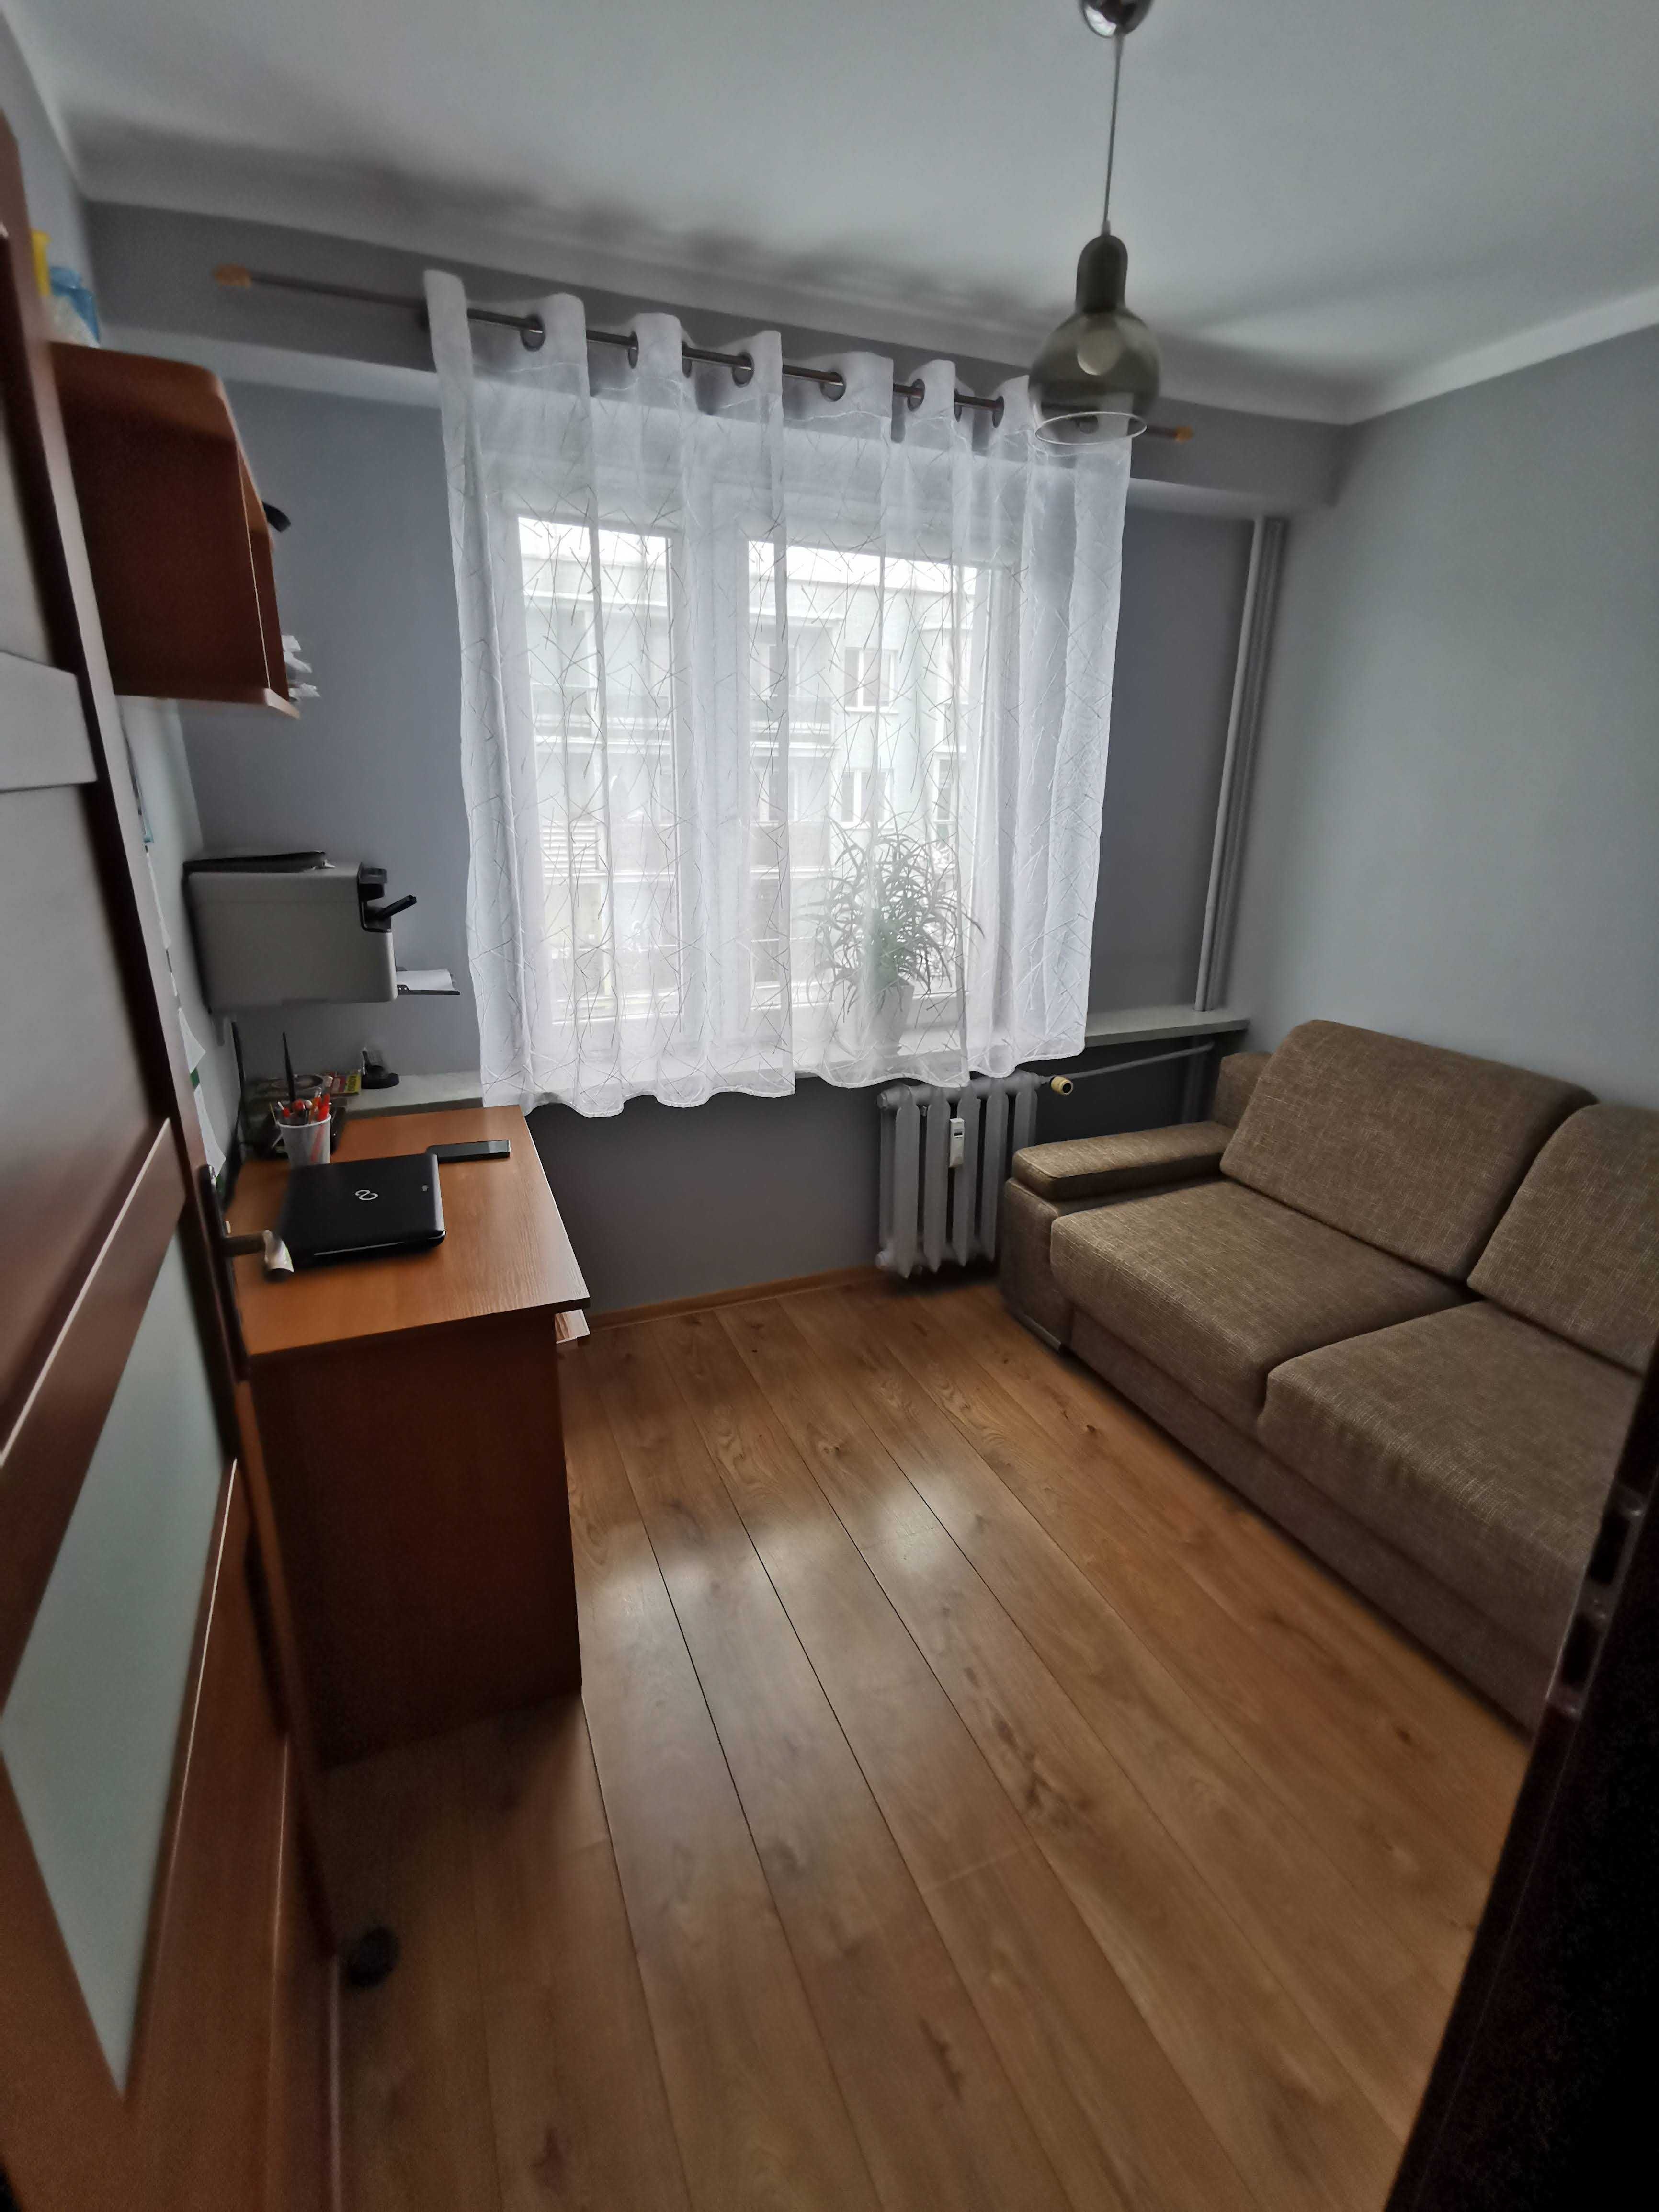 Sprzedam mieszkanie, Radymno osiedle Jagiełły, 60m2, 3 pokoje